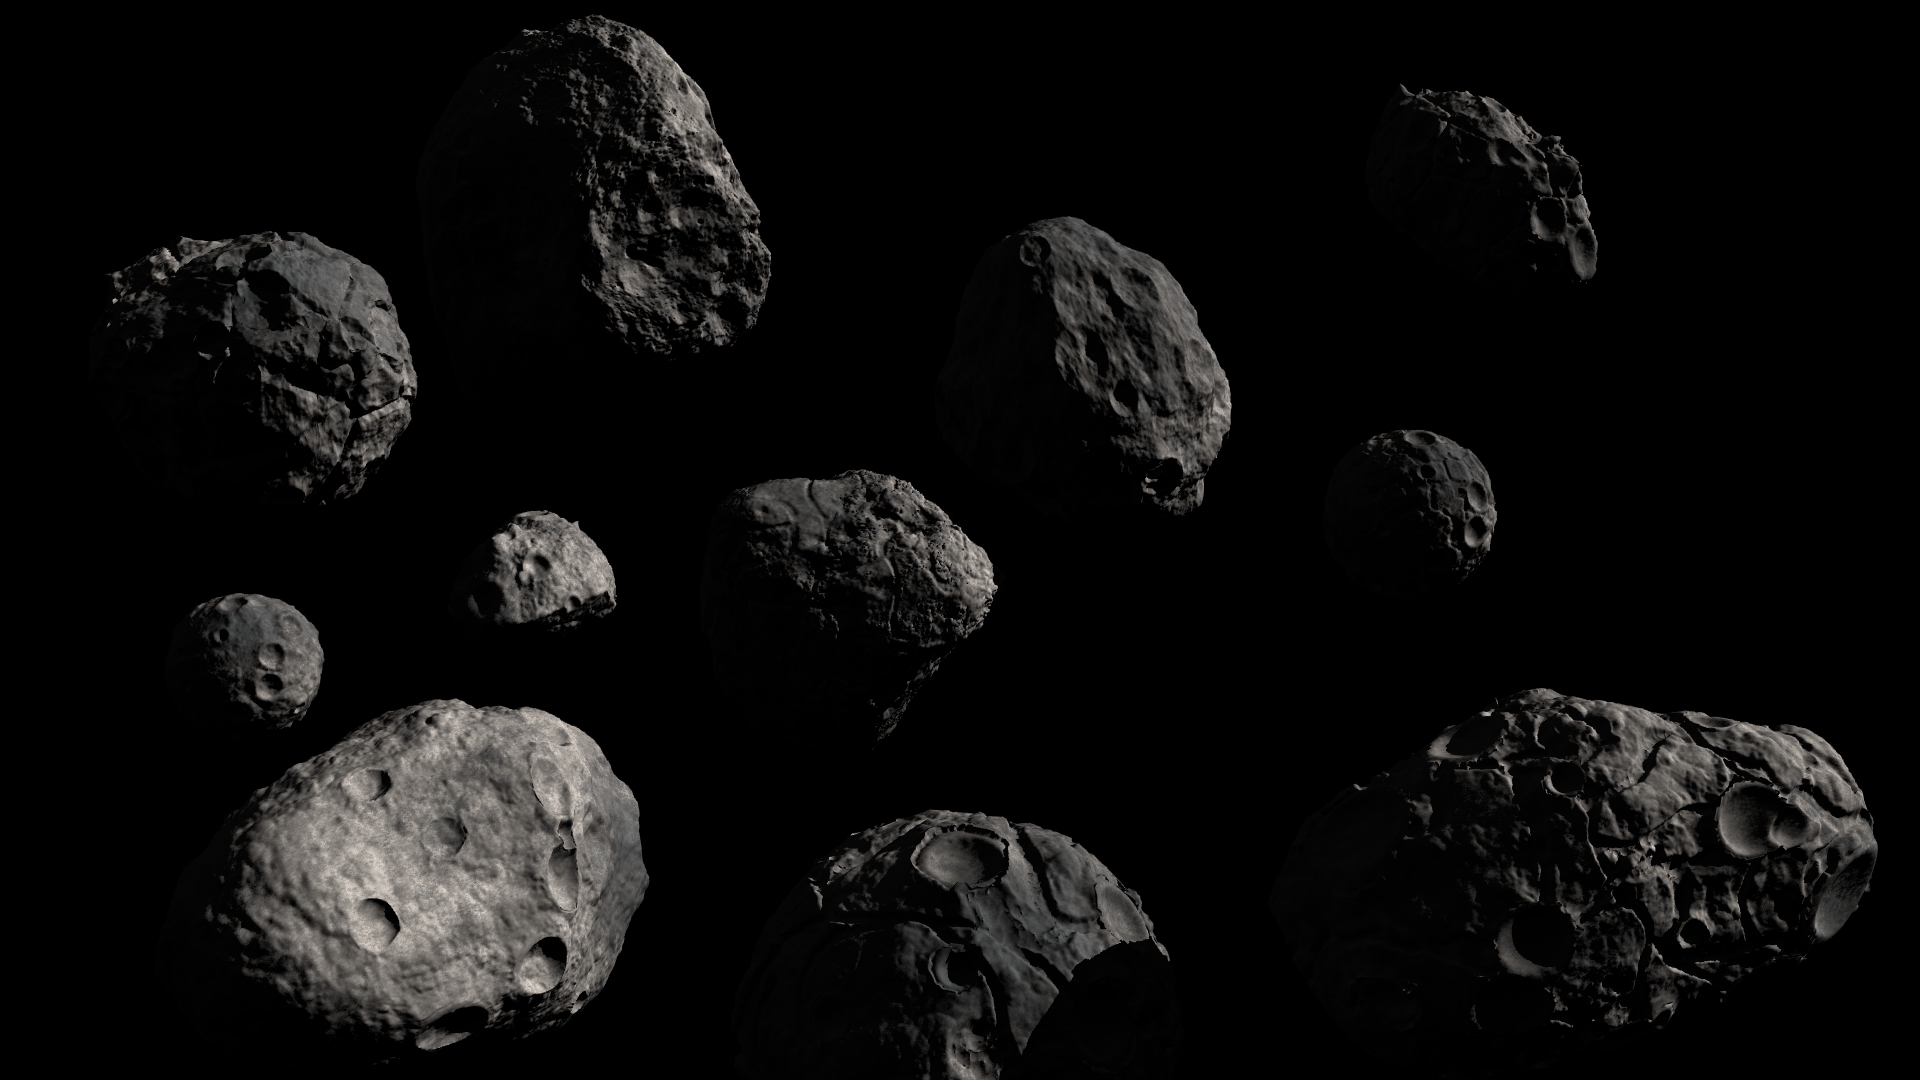 Cinque asteroidi in avvicinamento alla Terra, uno a distanza record